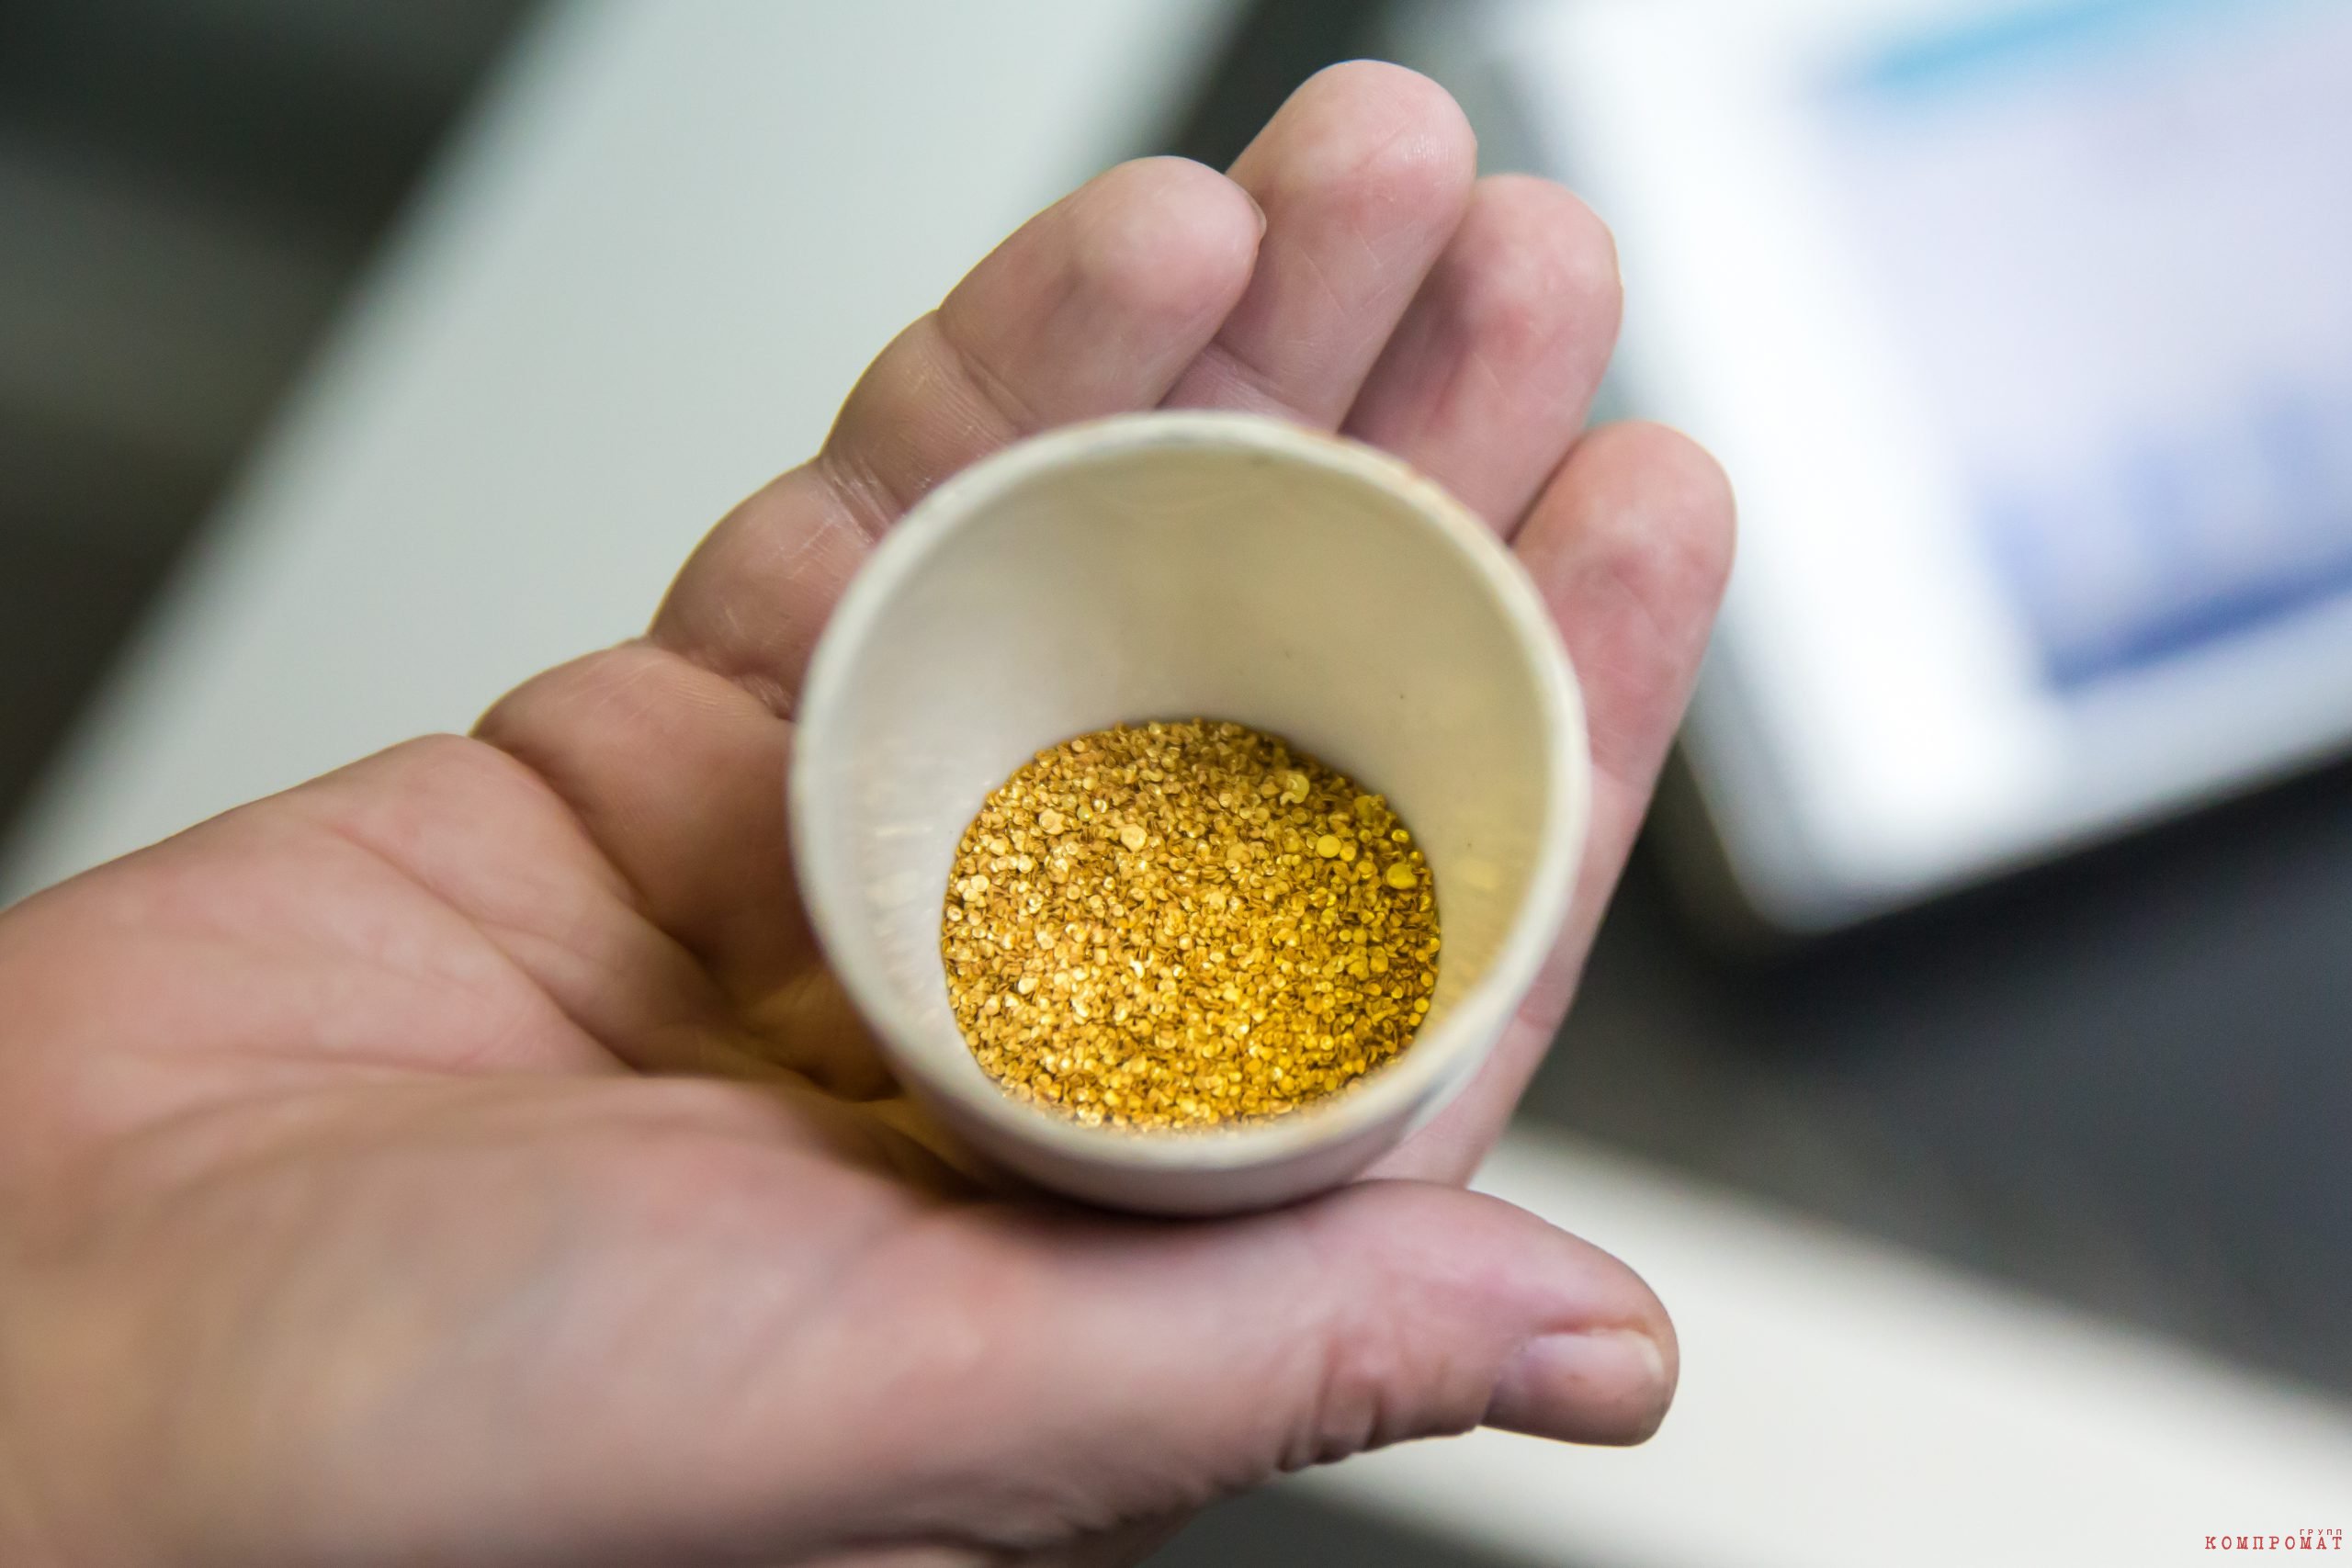 ФНС поймала компанию «Полиметалла» на занижении налогов по золоту. Продажу десятков тысяч тонн руды представили попутной добычей